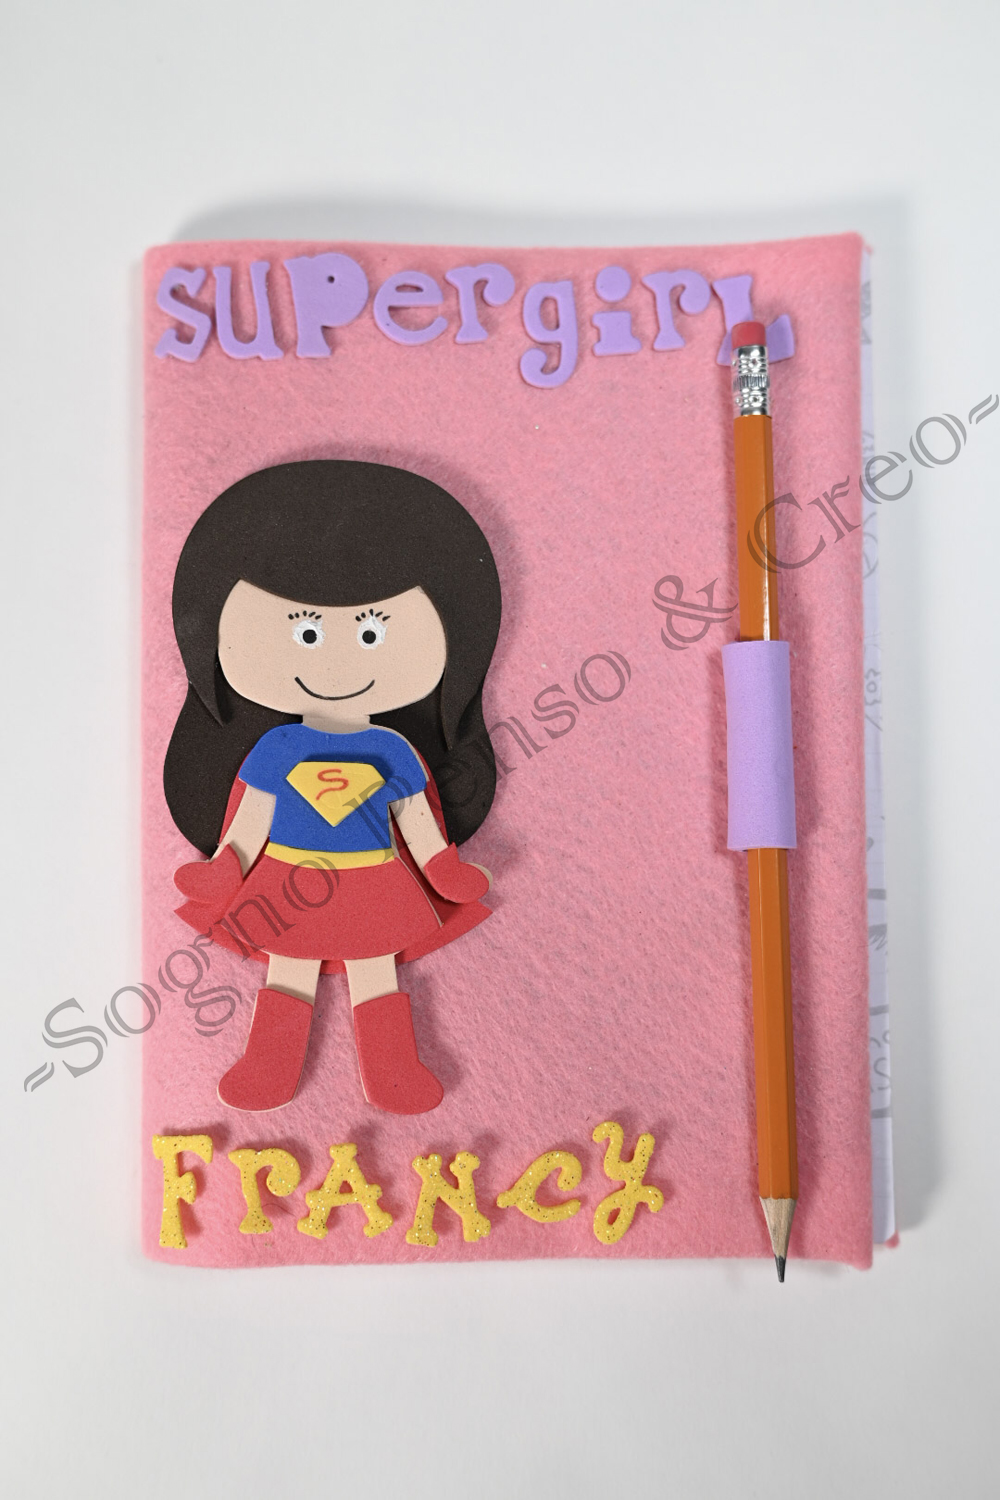 Supergirl personalizzato rosa